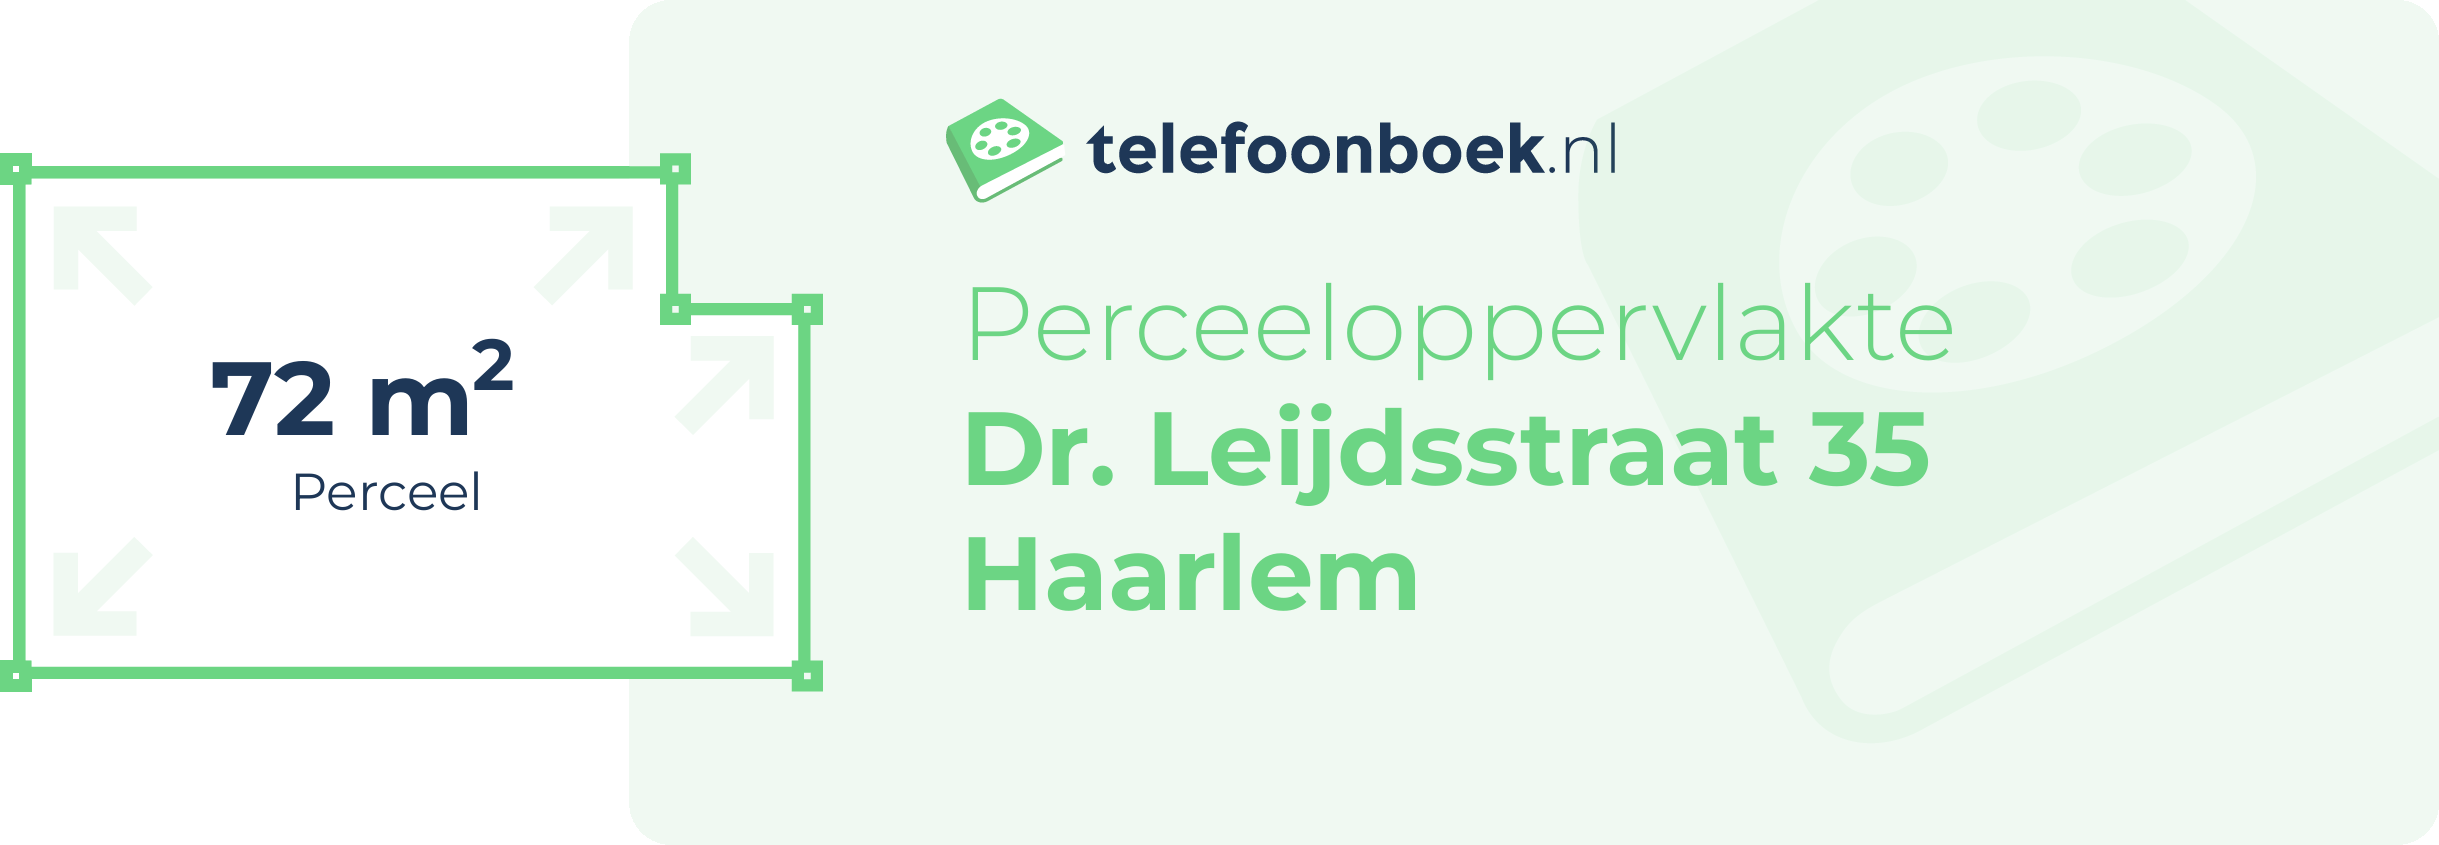 Perceeloppervlakte Dr. Leijdsstraat 35 Haarlem